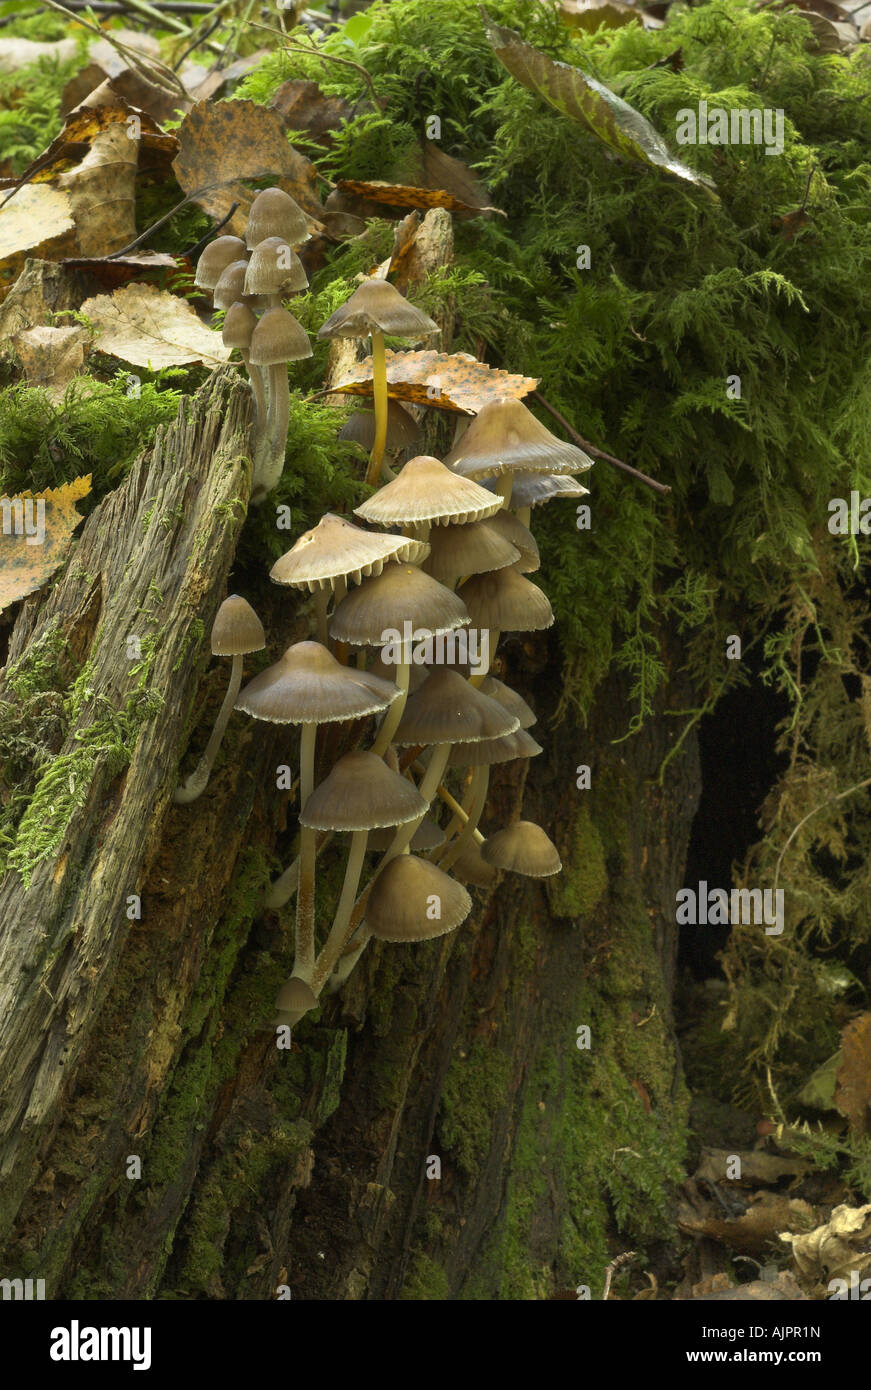 Woodland fungi on tree stump Stock Photo